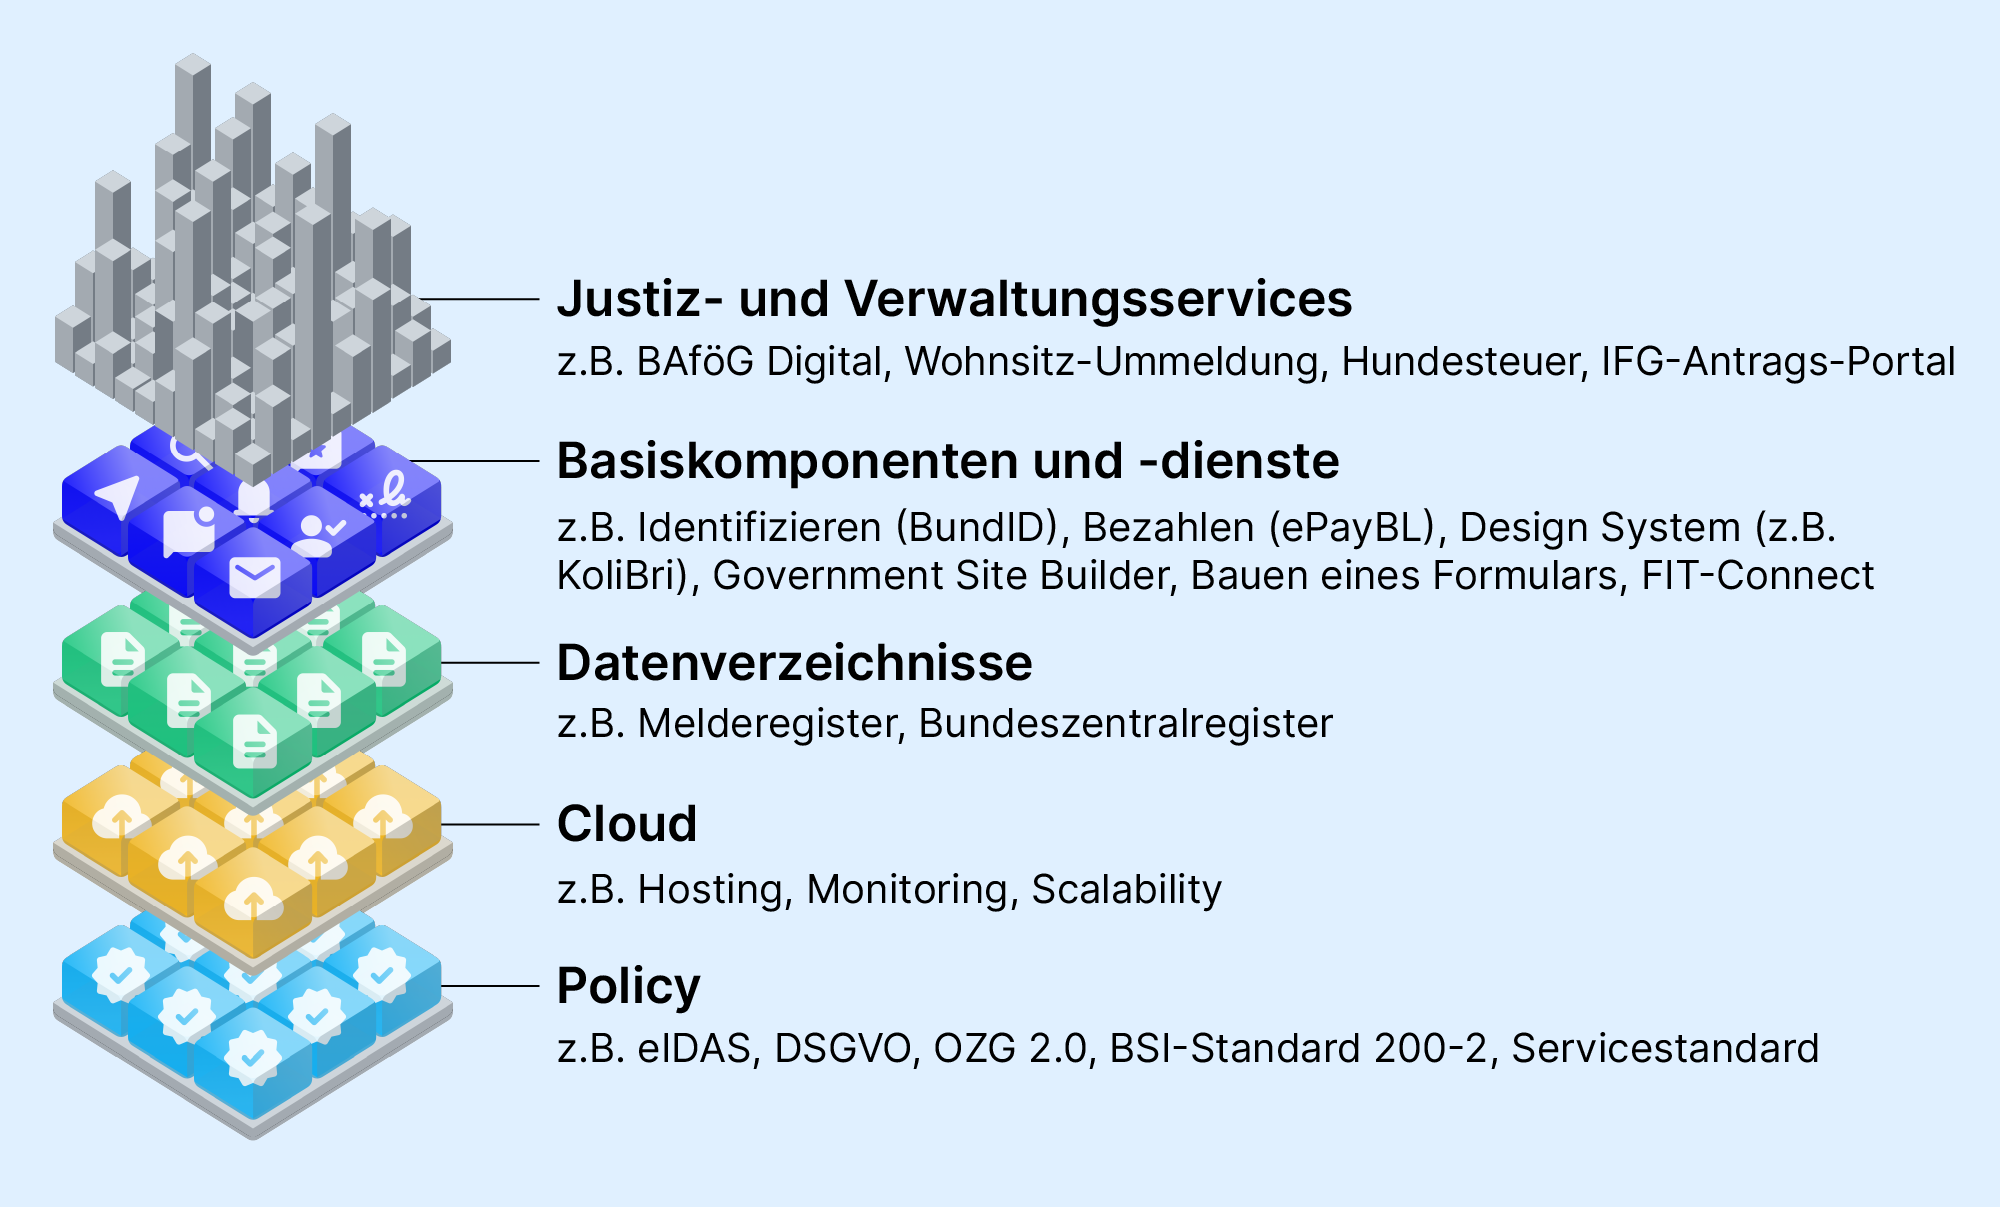 Visualisierung der Bedeutung von Basiskomponenten als ein grundlegender Baustein für digitale Services gemeinsam mit weiteren Elementen wie Datenverzeichnissen, Cloud-Infrastrukturen und Richtlinien.